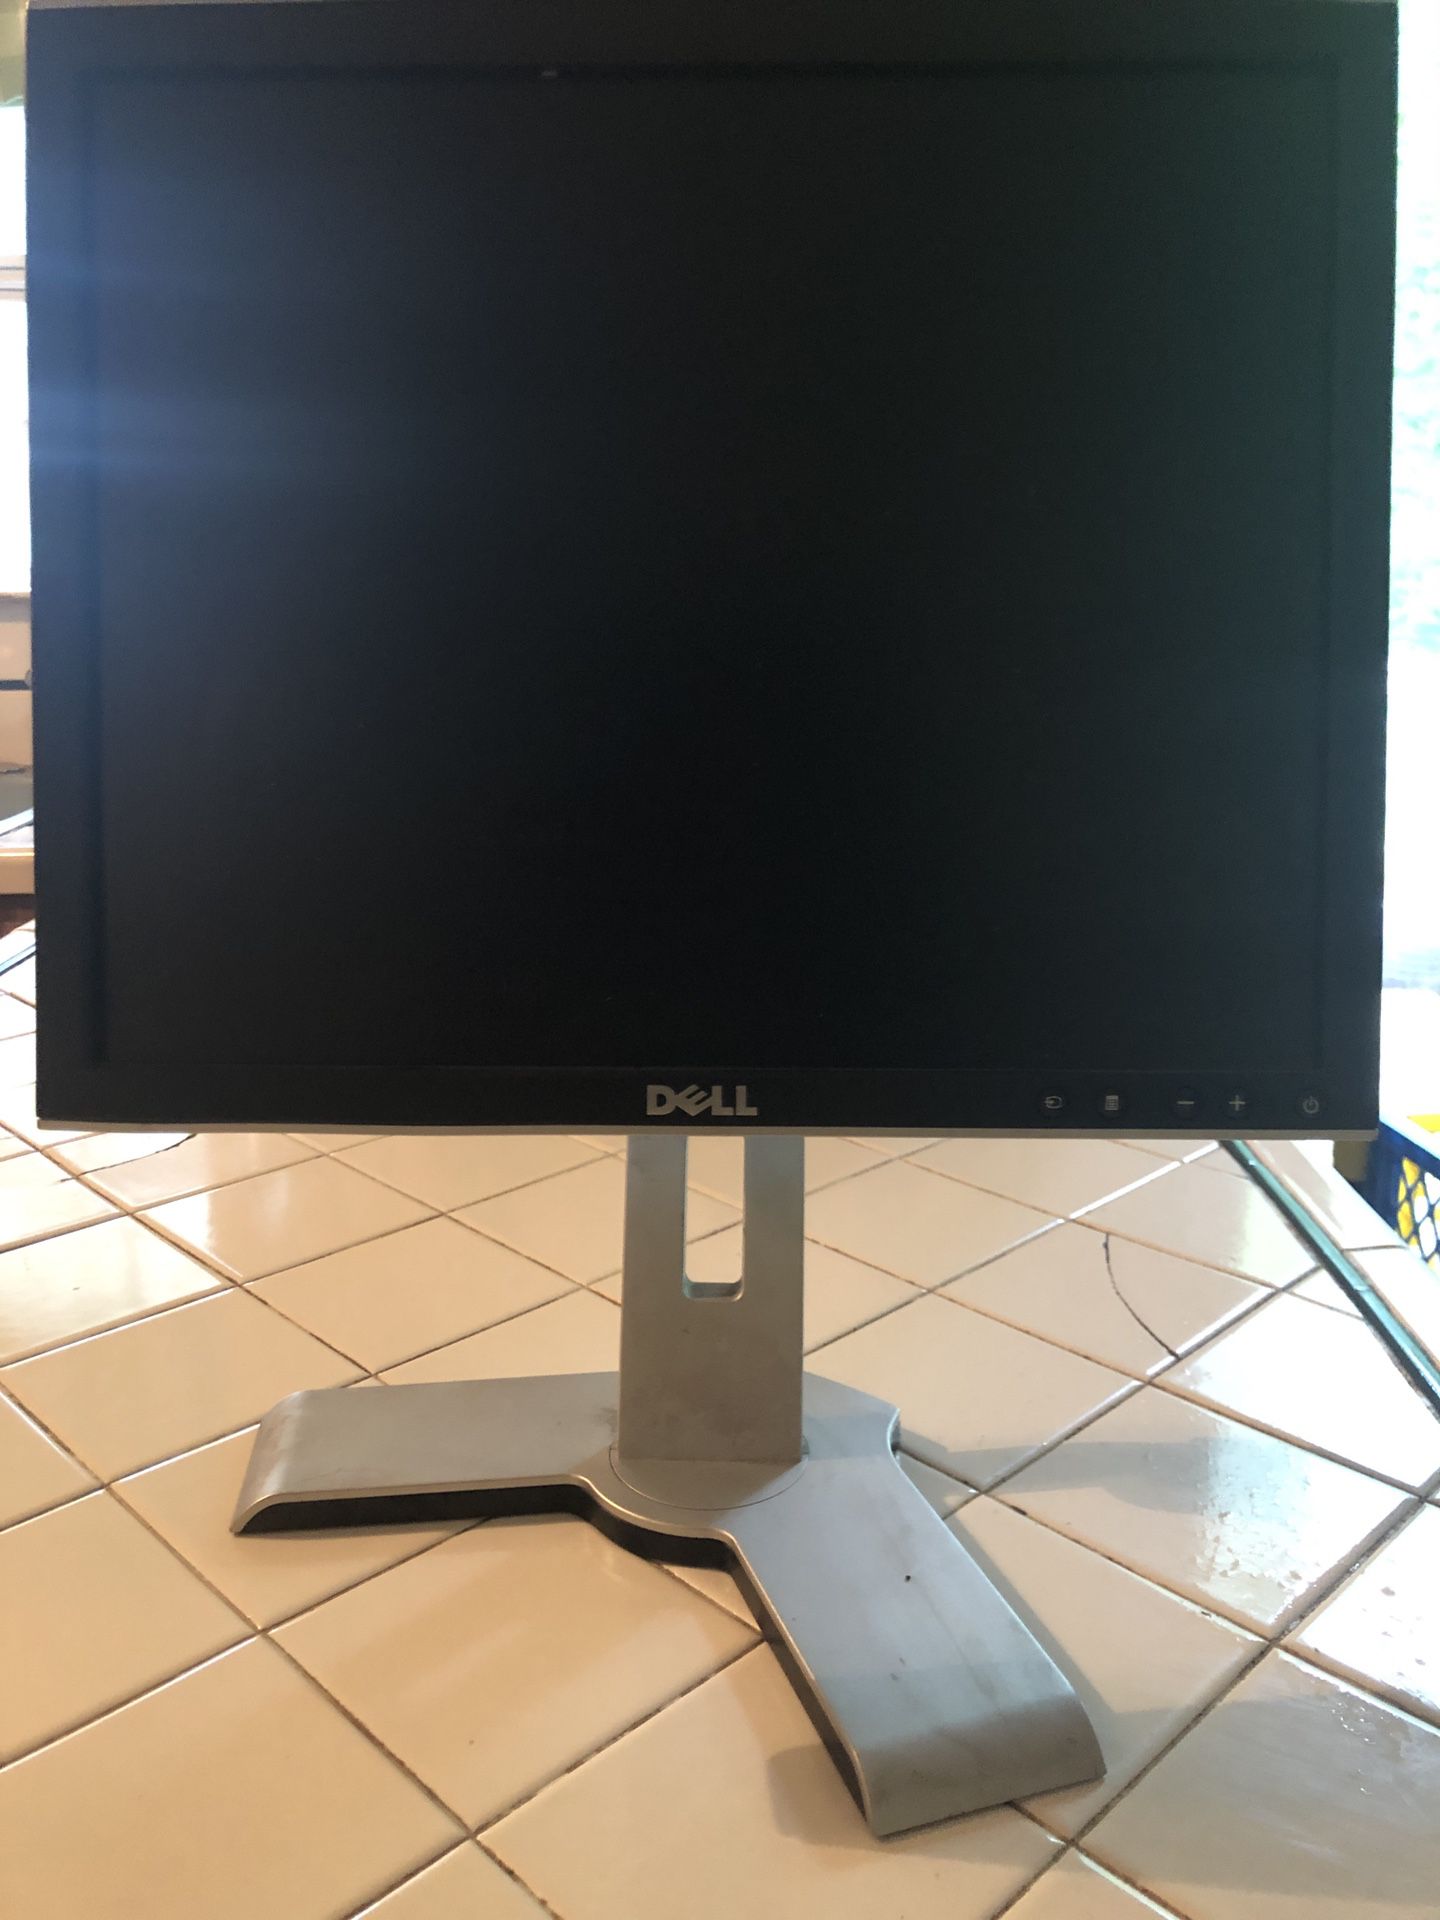 Two 17” Dell computer monitors